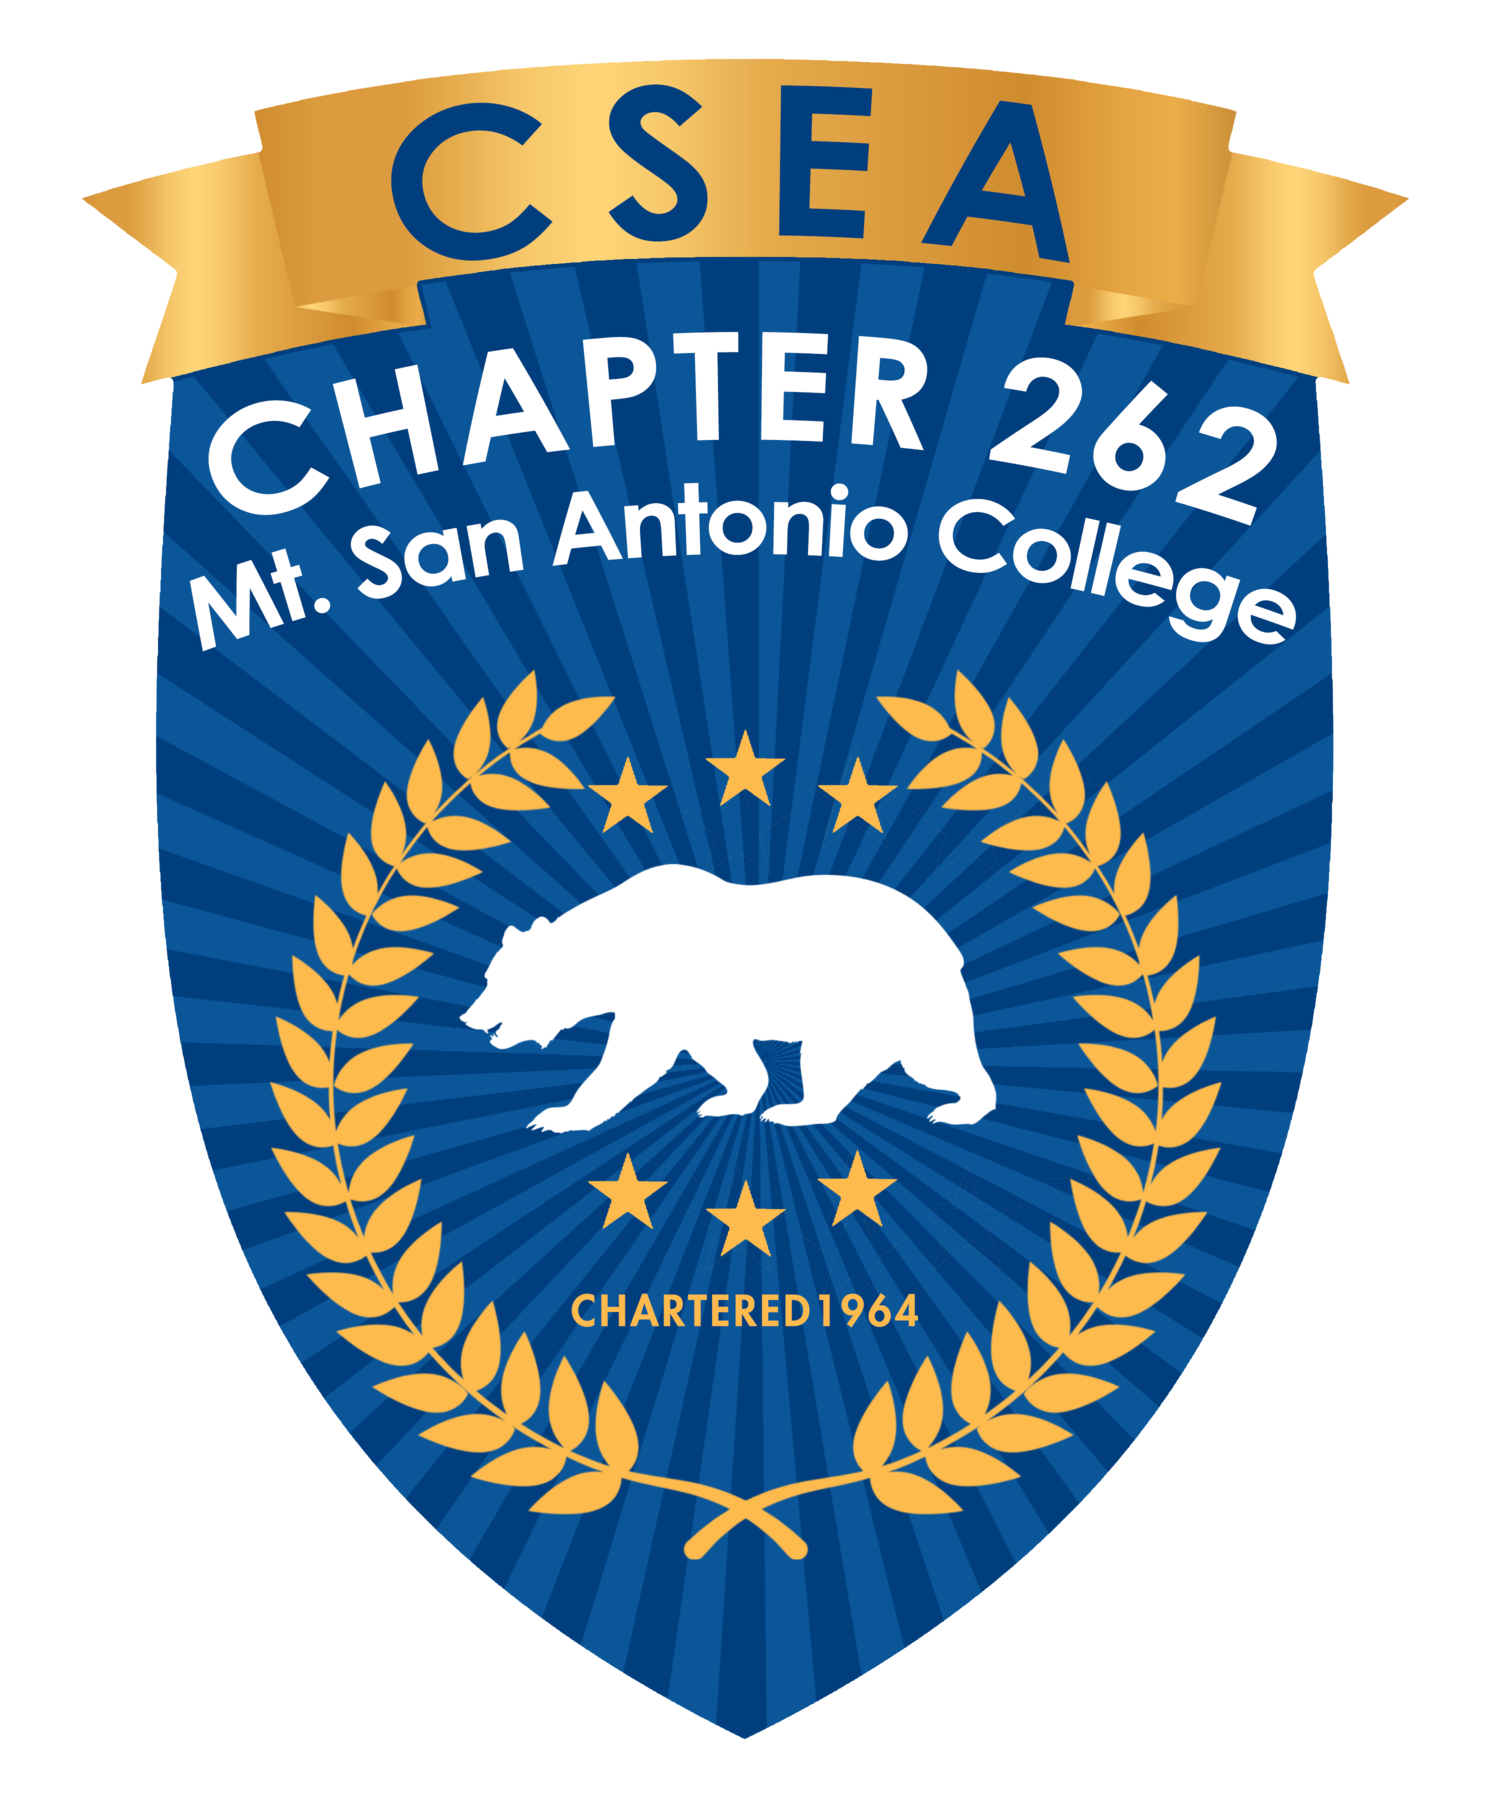 CSEA Chapter 262 — Mt. San Antonio College